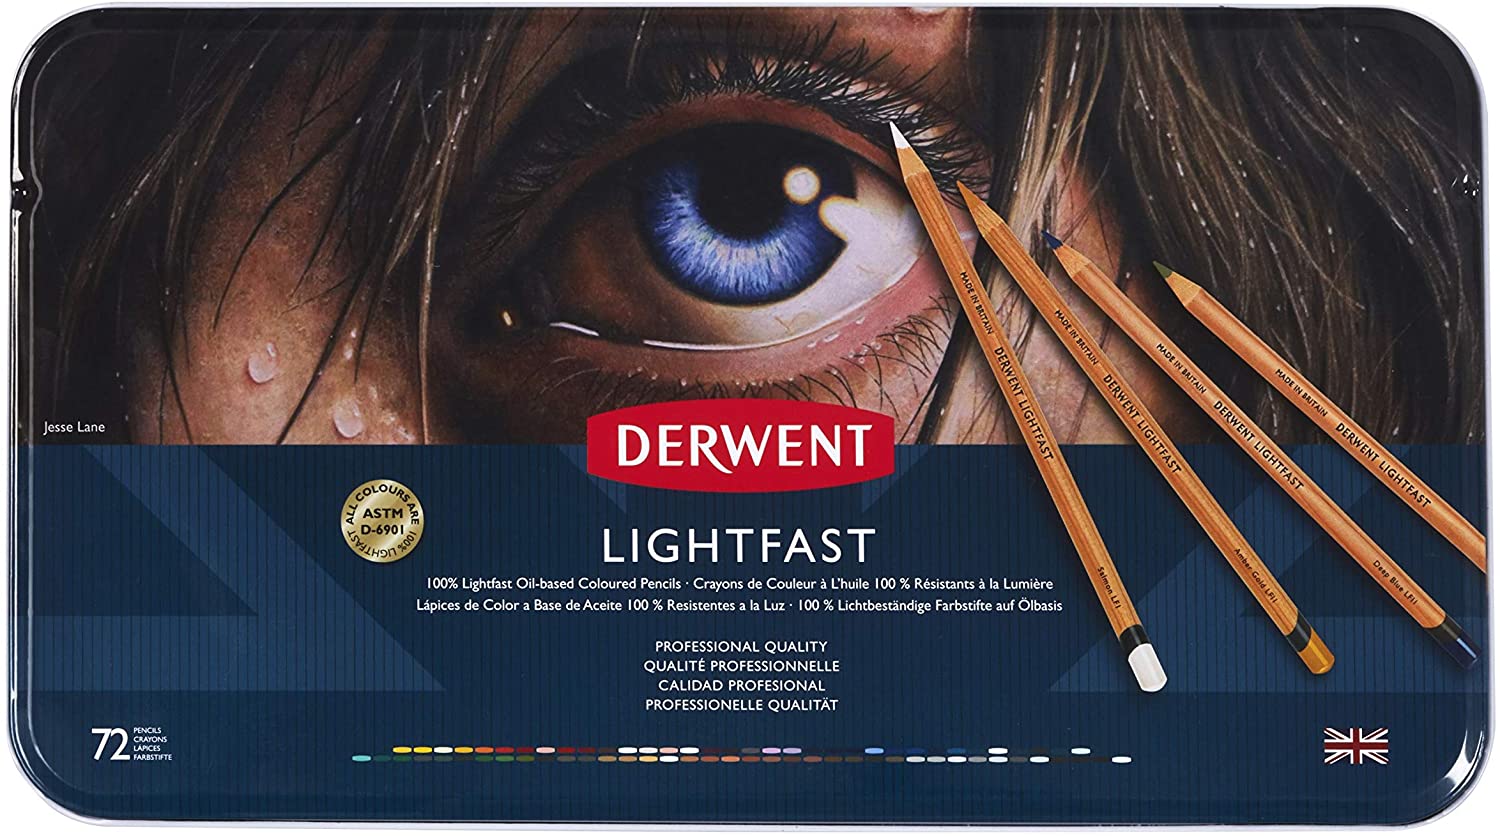 Derwent Lightfast Coloured Pencils case